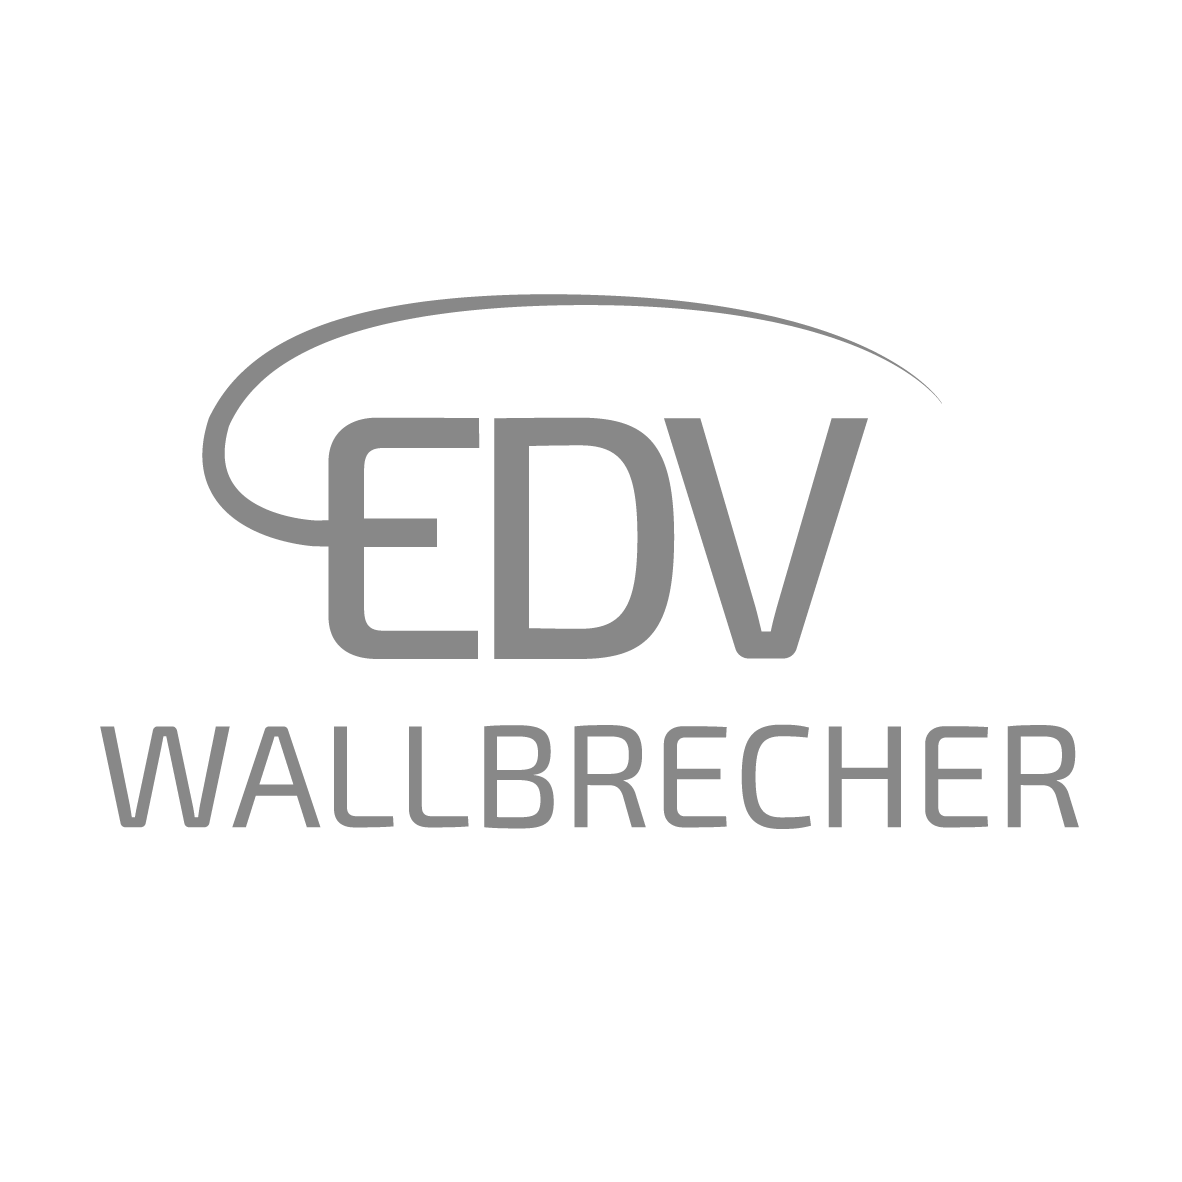 EDV Wallbrecher